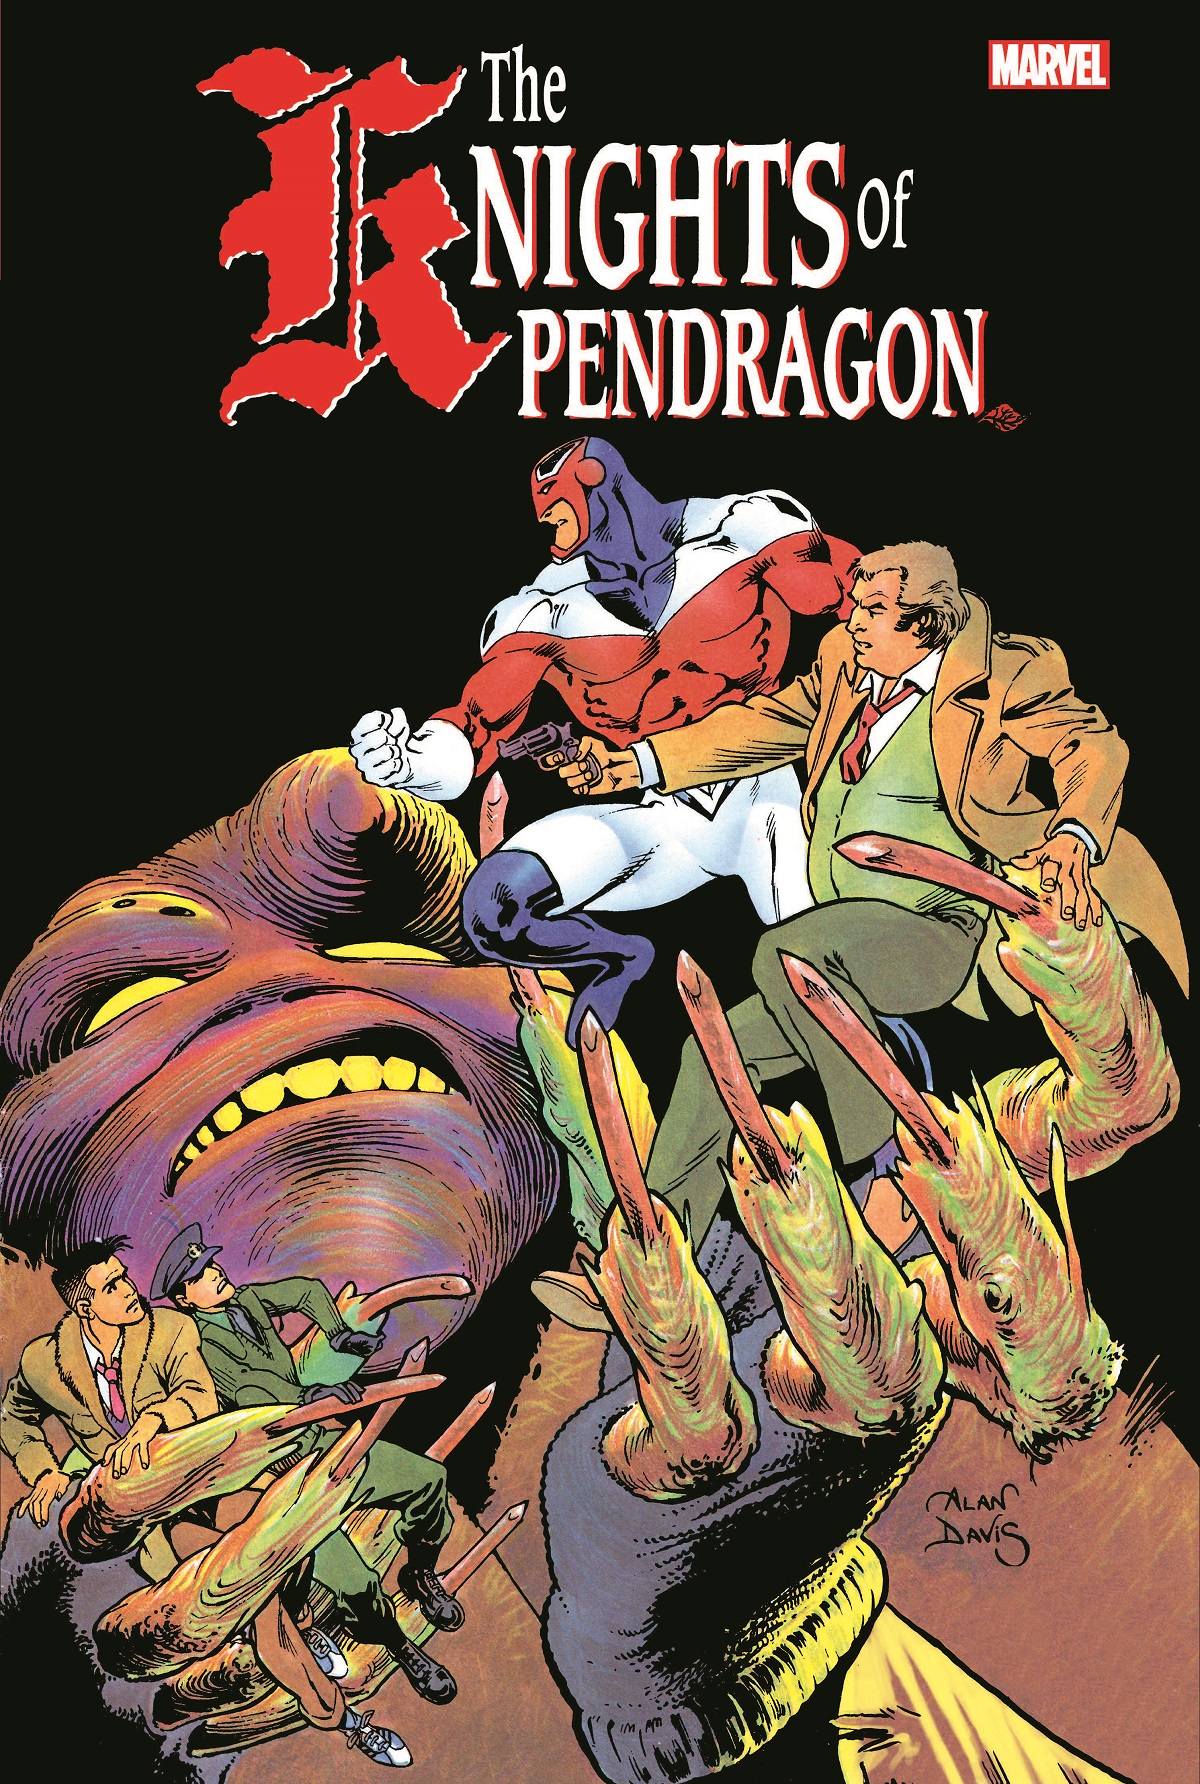 Pendragon comics